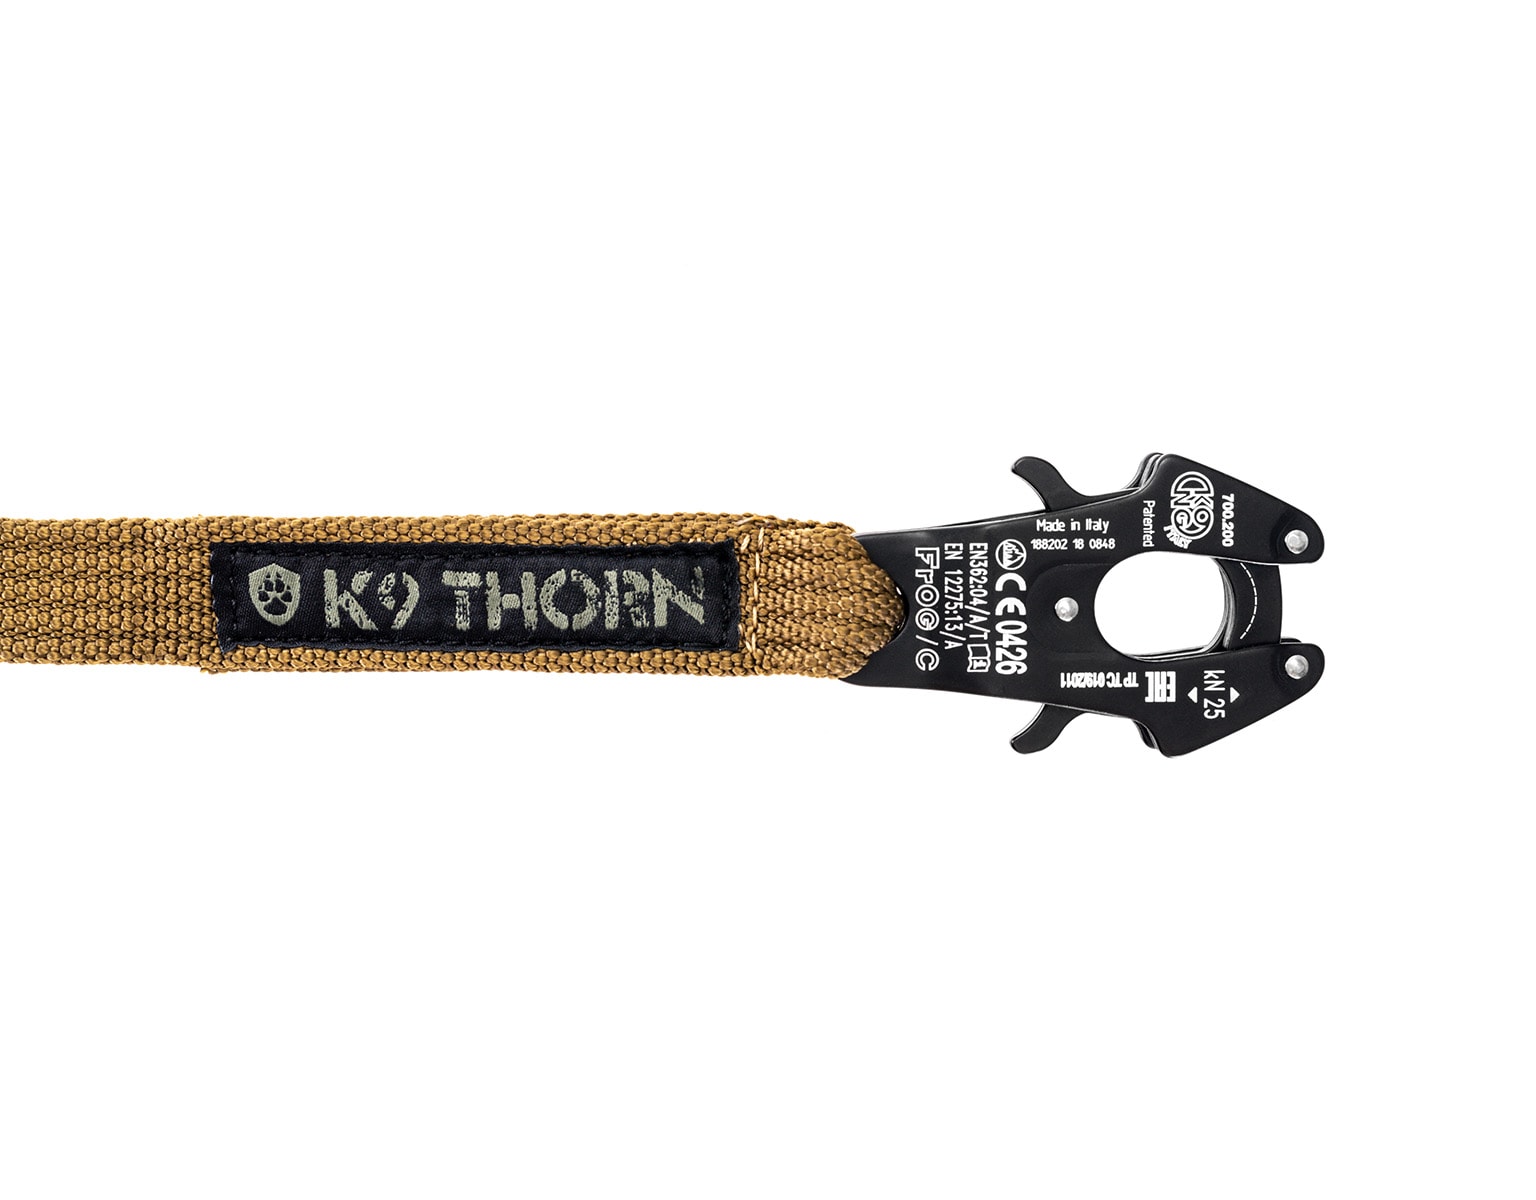 Шнурок K9 Thorn Kong Frog Coyote - 100 см